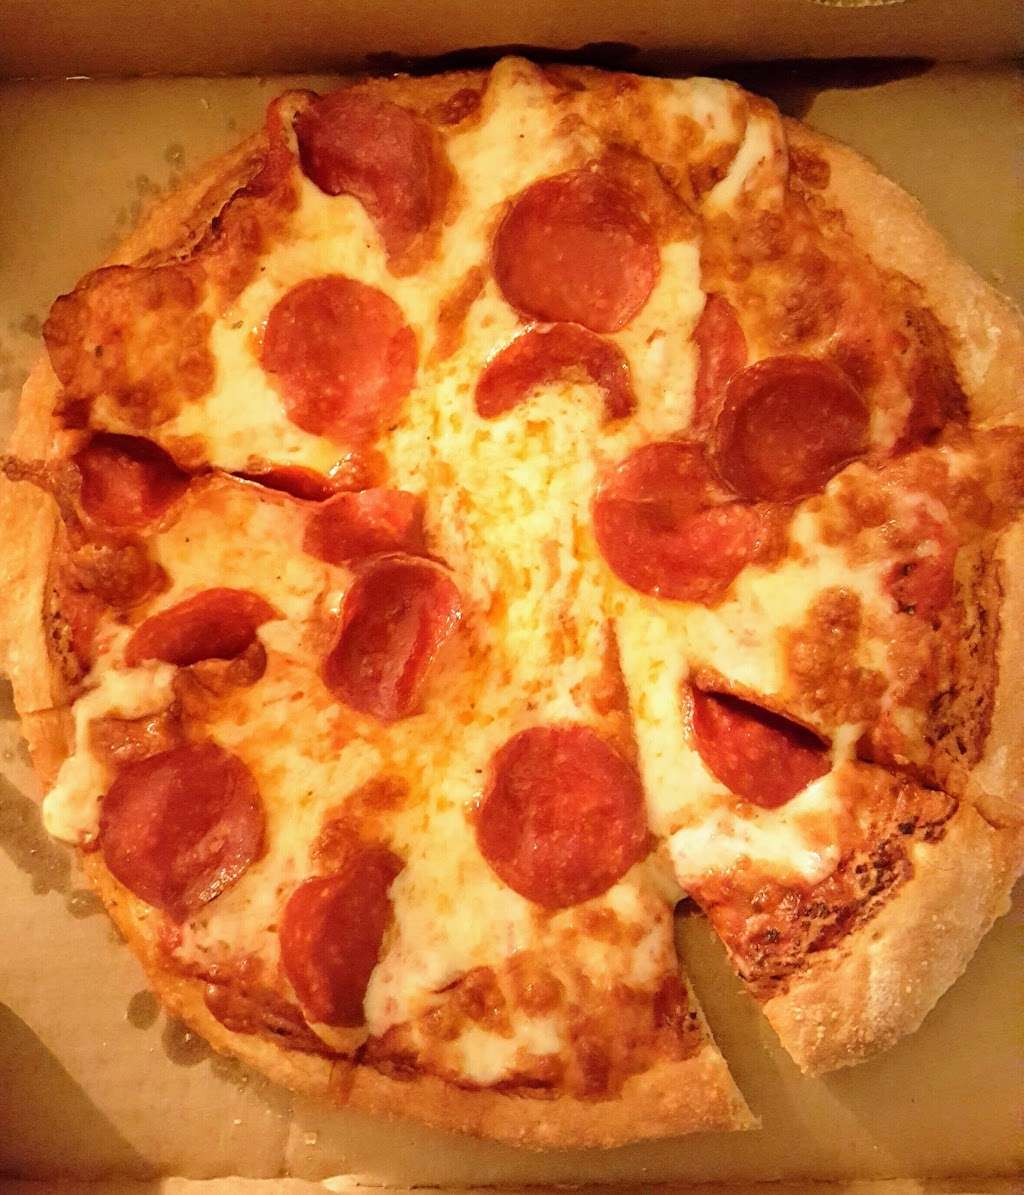 Manhattan Pizza II | 4955 E Craig Rd #14, Las Vegas, NV 89115, USA | Phone: (702) 643-6664